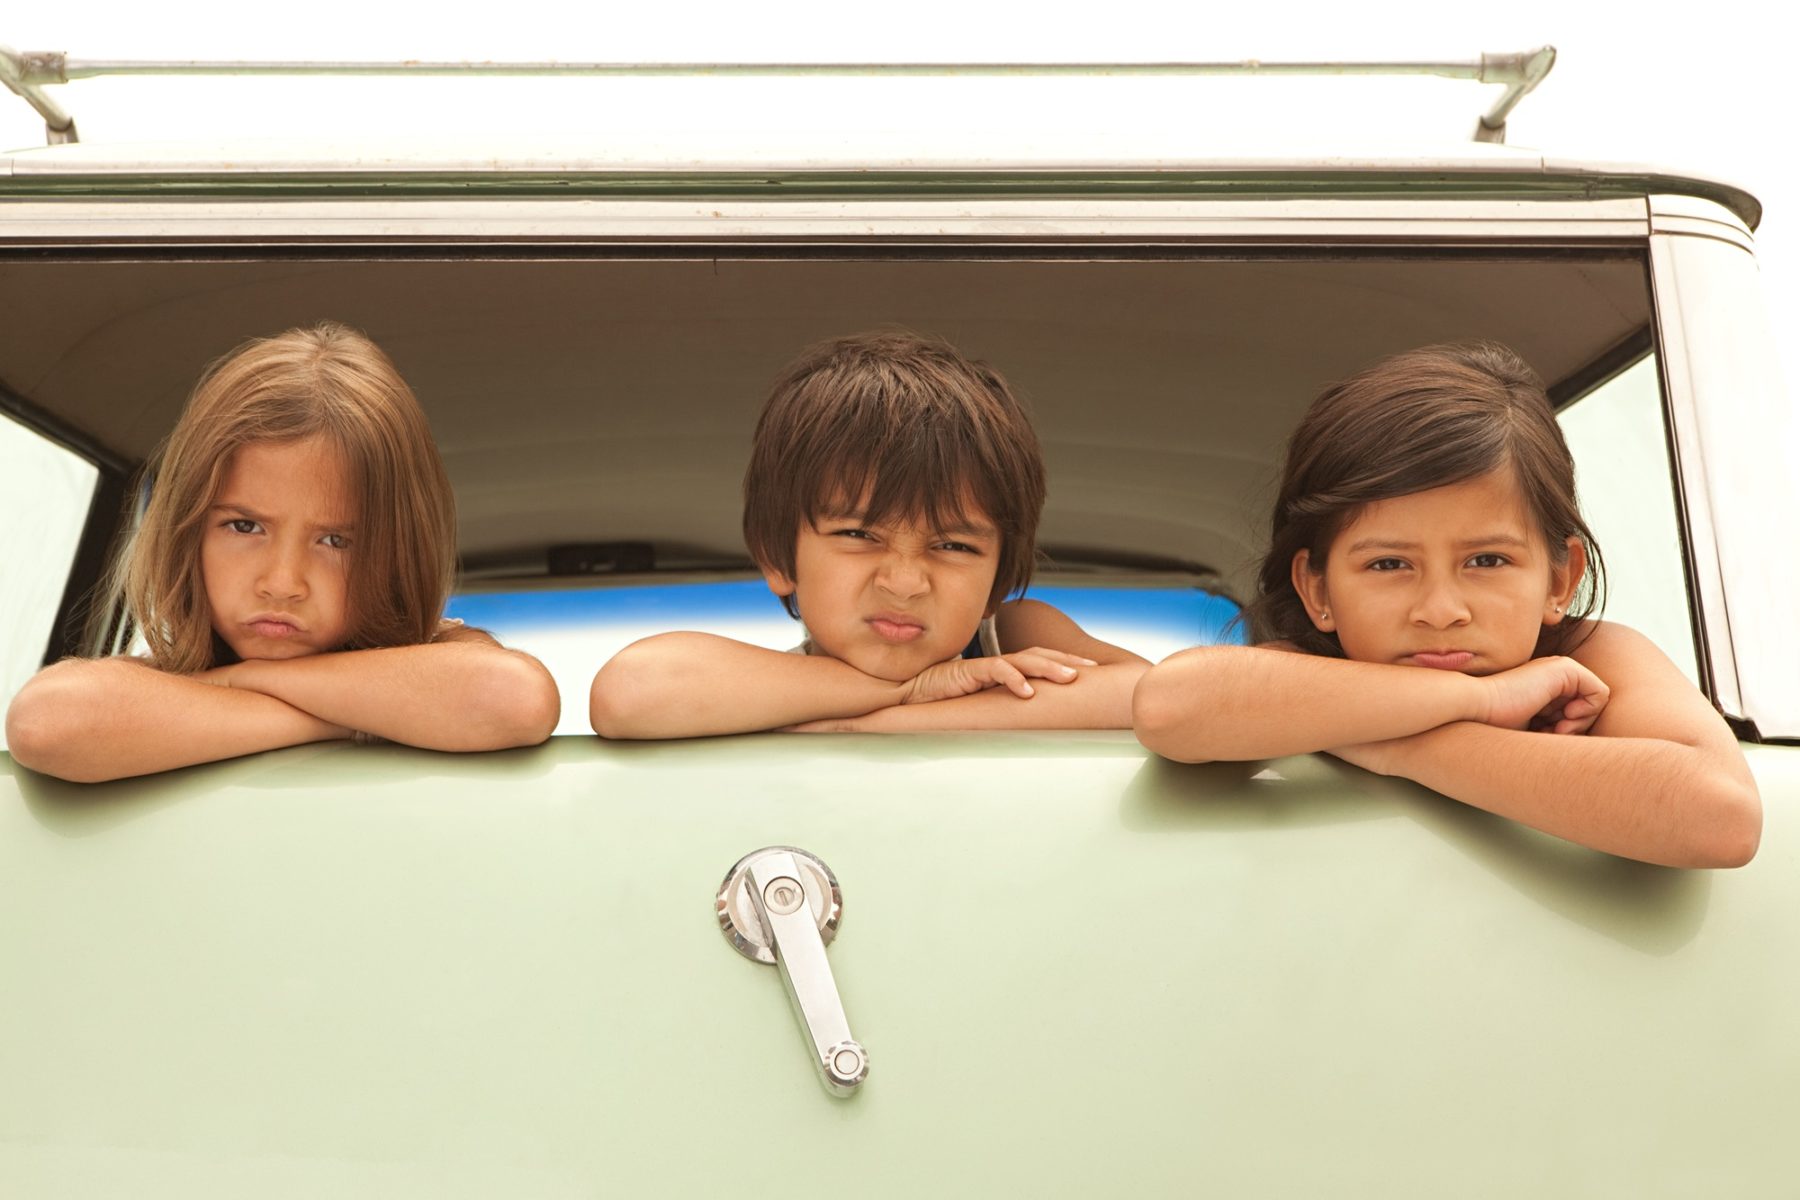 Des enfants boudent à l'arrière d'une voiture